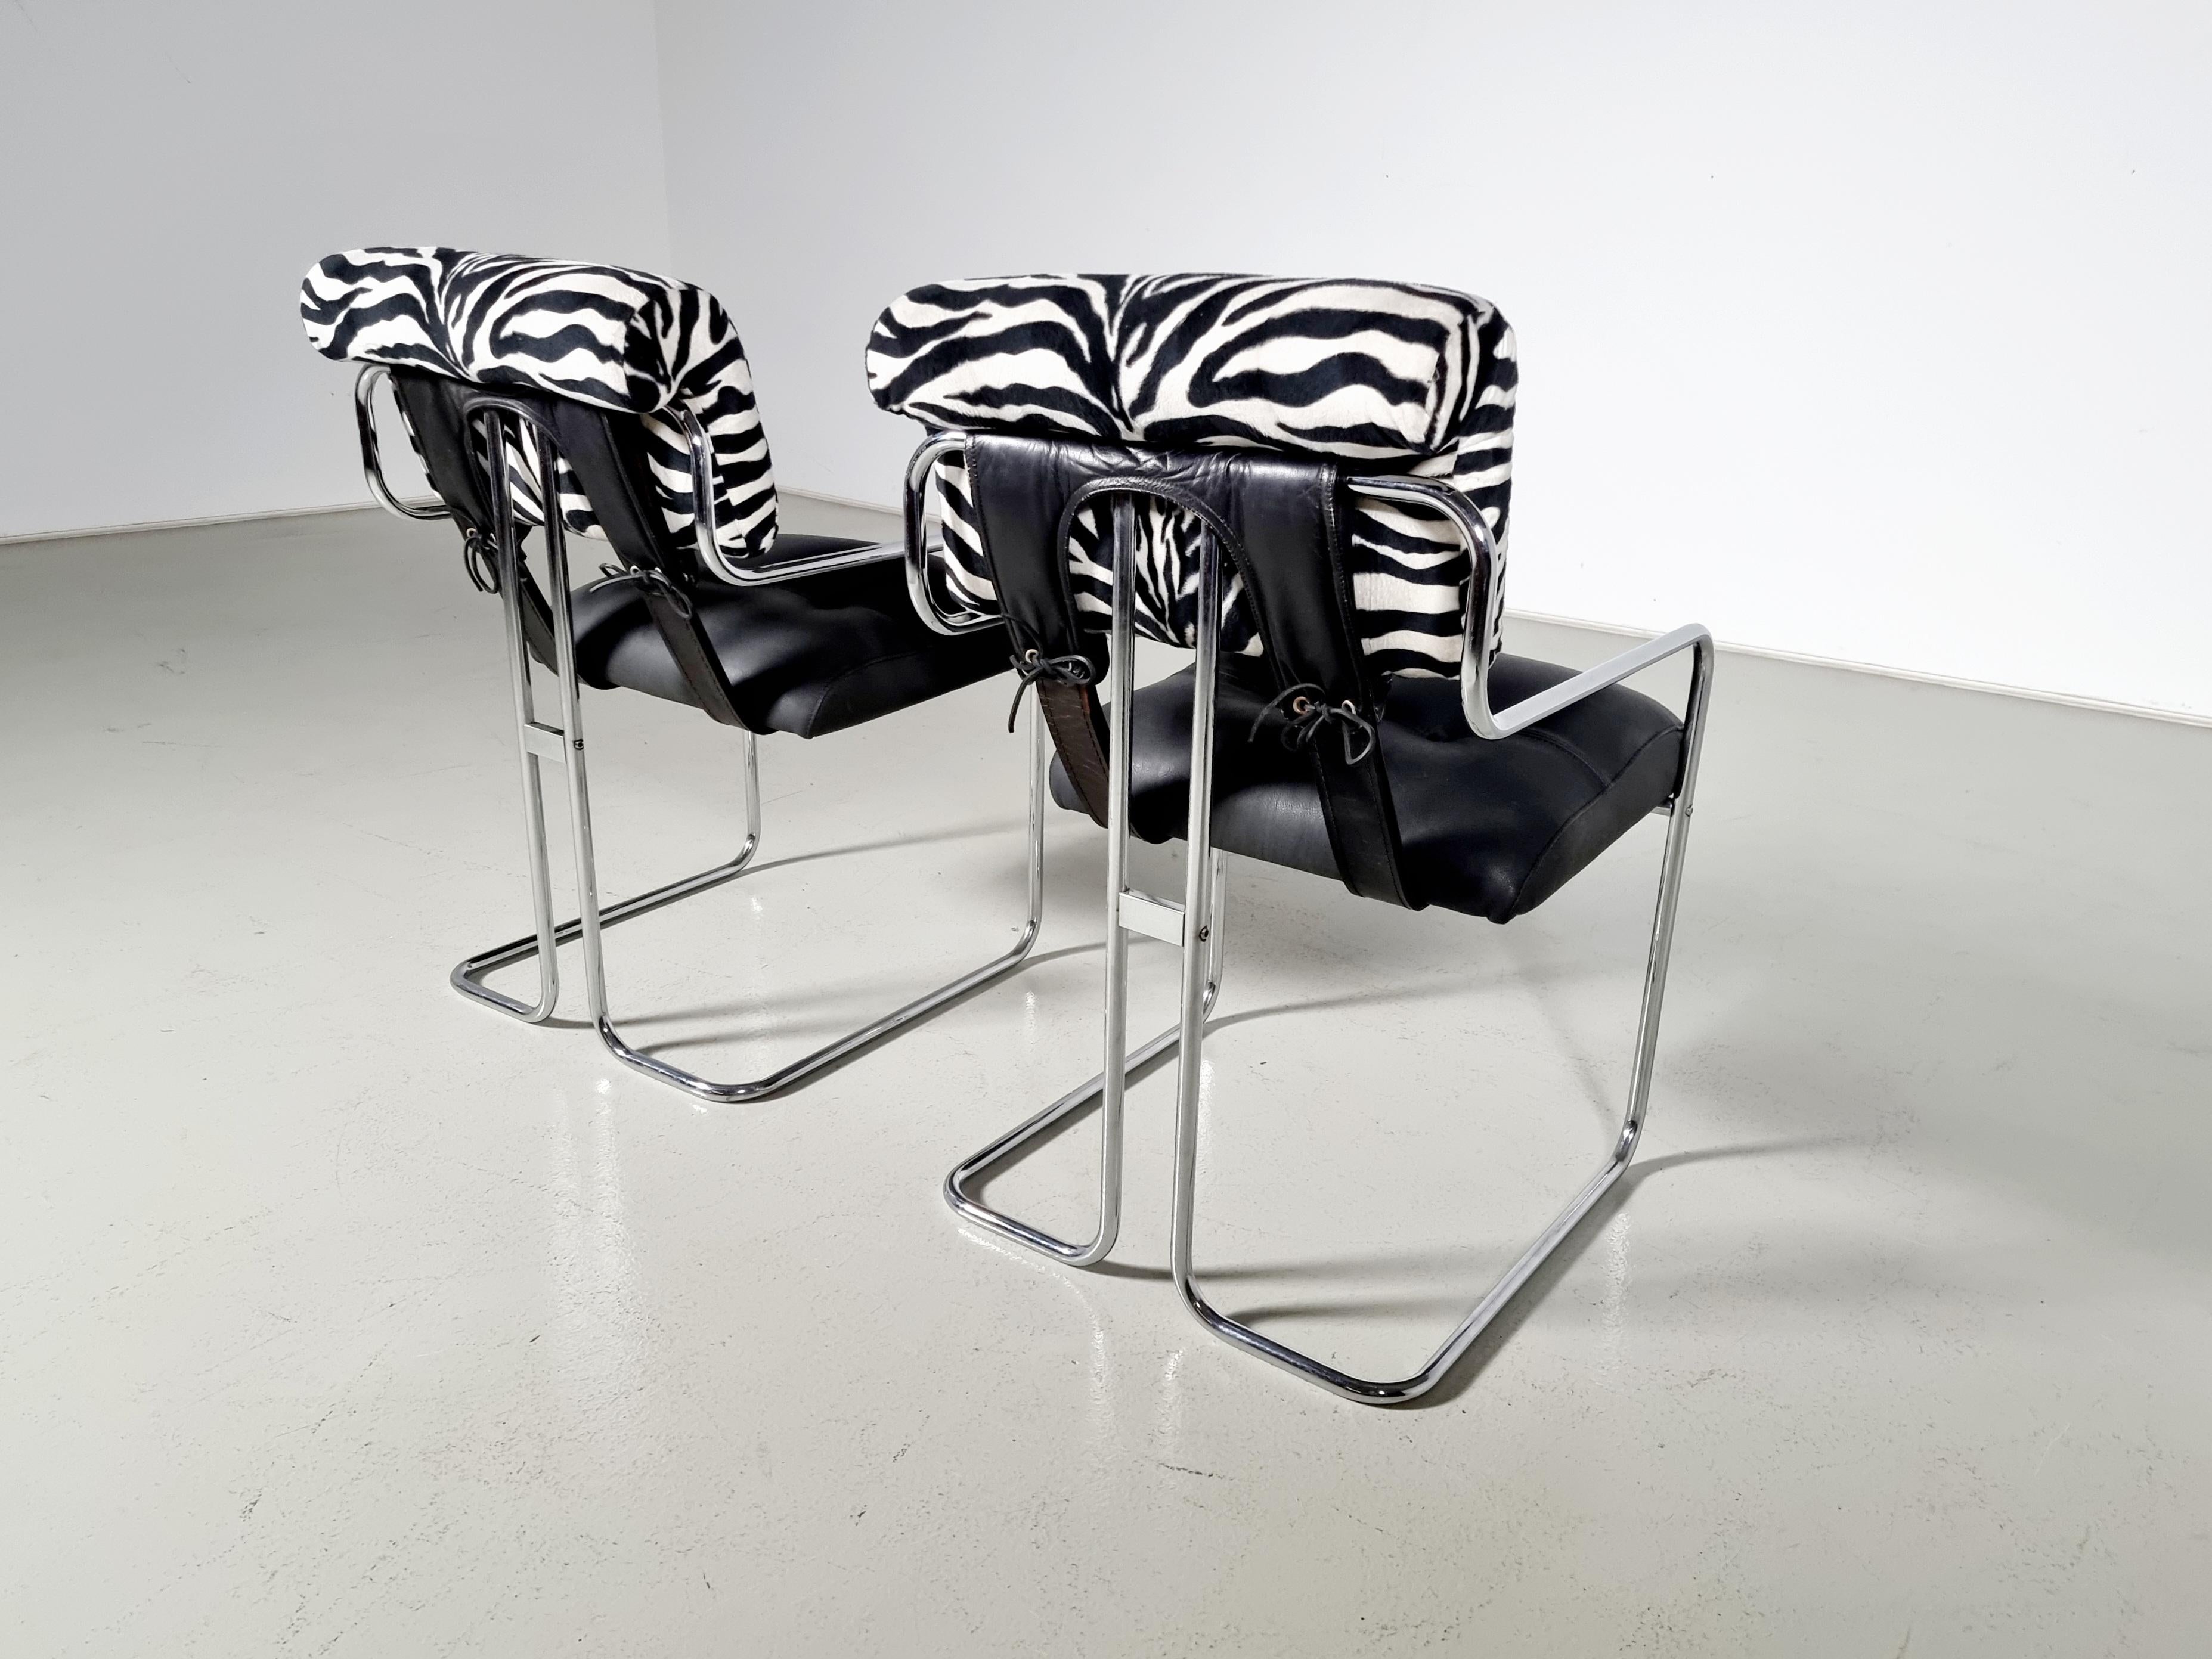 Ensemble de 2 chaises en cuir noir, tissu zébré et chrome conçues par Guido Faleschini pour Mariani, collection Pace. Le revêtement en cuir et en tissu est fixé à de gracieuses armatures tubulaires en acier poli, ainsi qu'à des sangles en cuir au